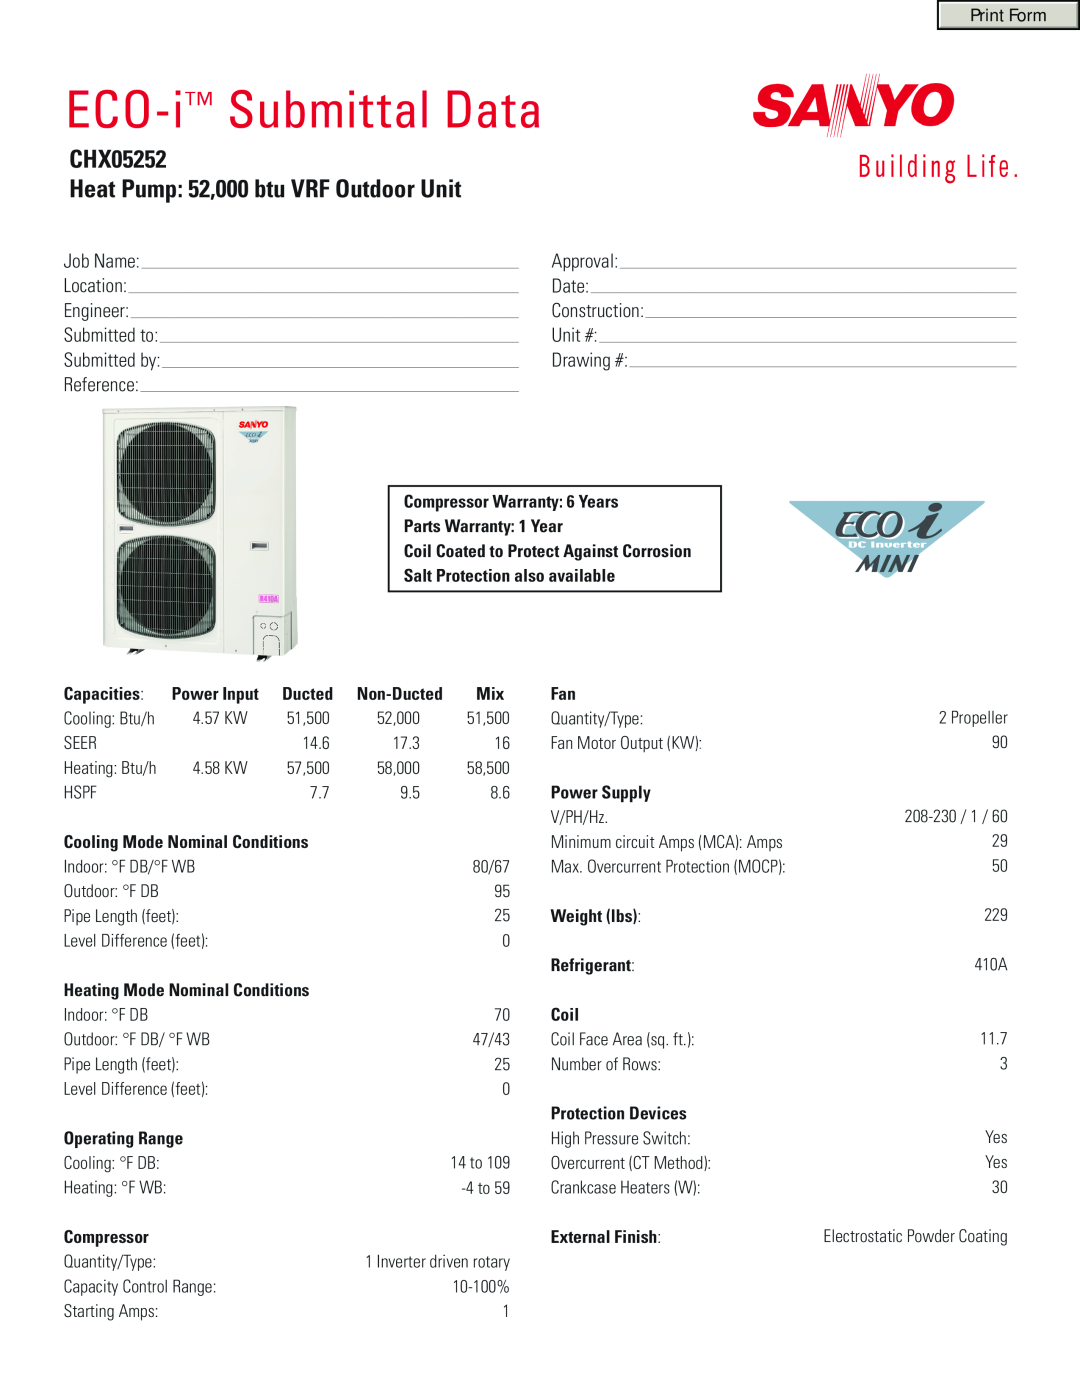 Sanyo warranty ECO-i Submittal Data, CHX05252 Heat Pump 52,000 btu VRF Outdoor Unit 